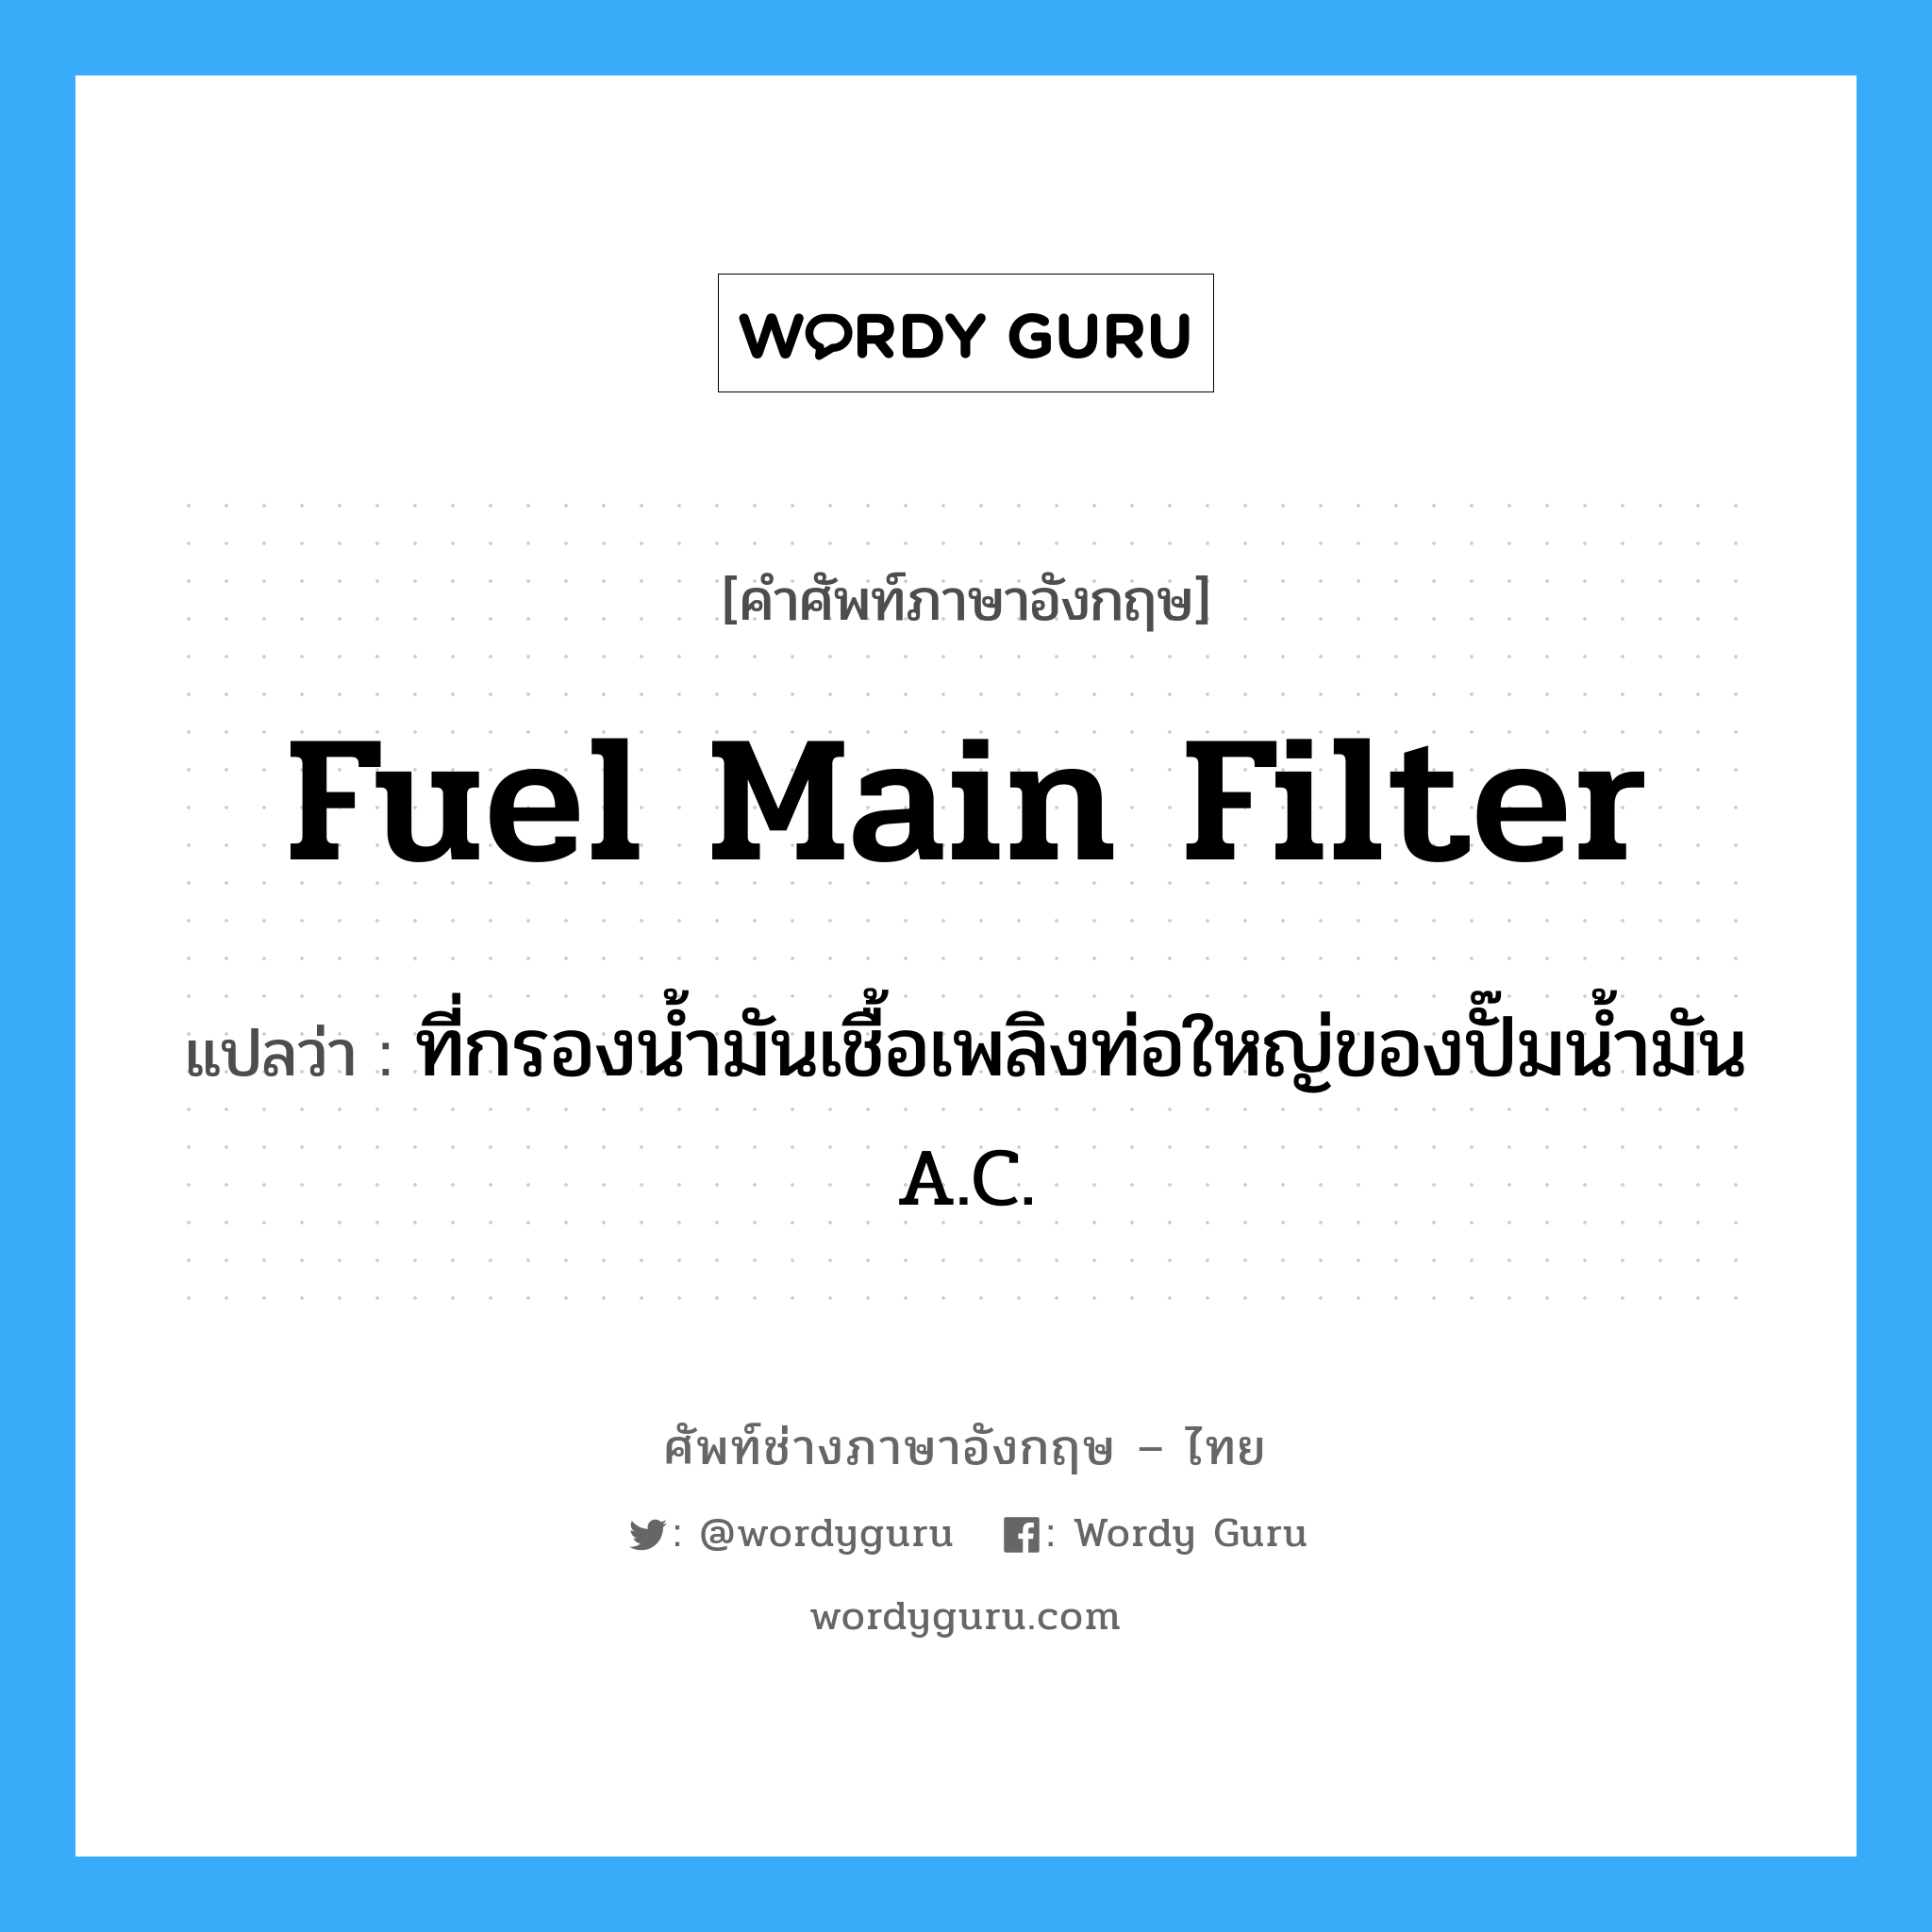 fuel main filter แปลว่า?, คำศัพท์ช่างภาษาอังกฤษ - ไทย fuel main filter คำศัพท์ภาษาอังกฤษ fuel main filter แปลว่า ที่กรองน้ำมันเชื้อเพลิงท่อใหญ่ของปั๊มน้ำมัน A.C.